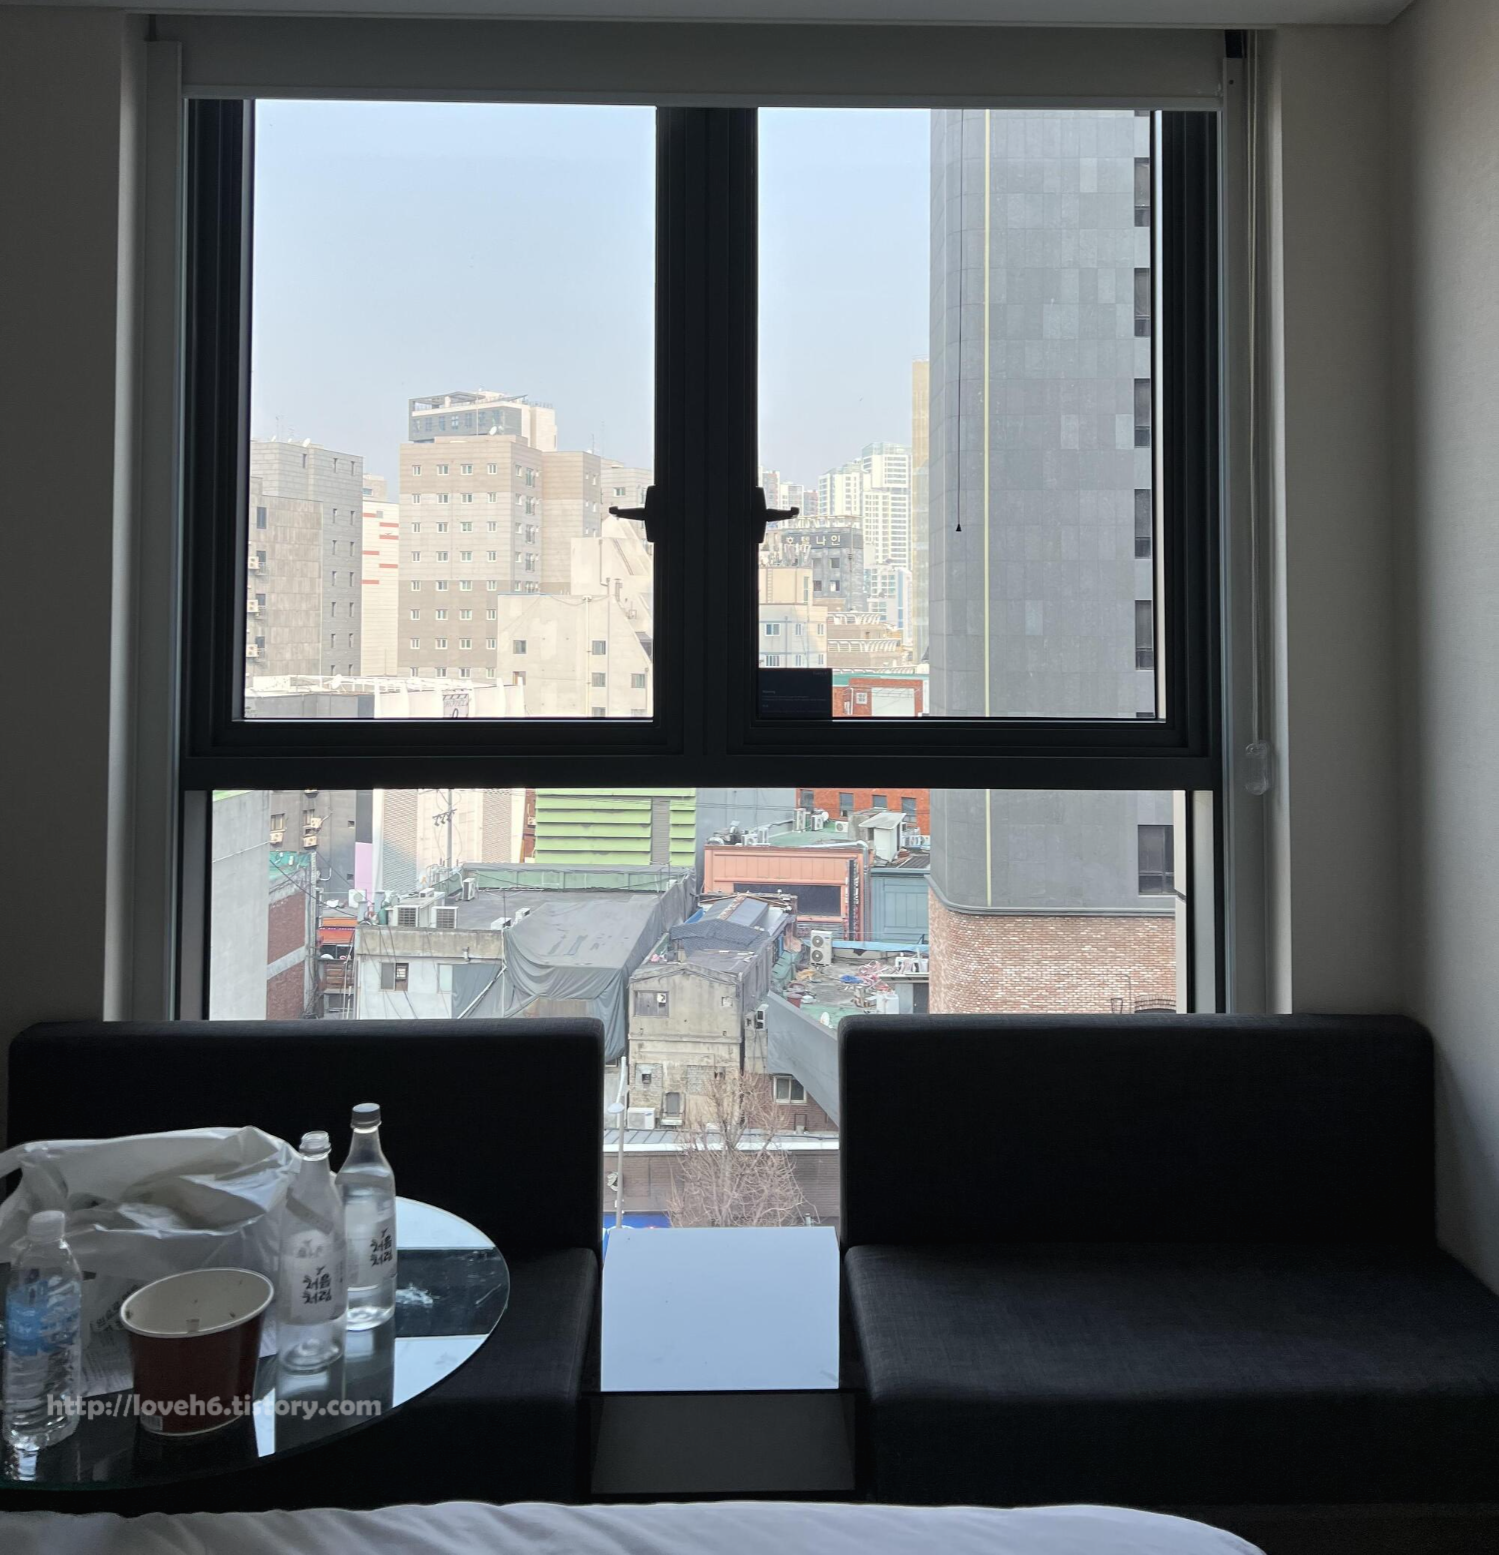 페어필드 바이 메리어트 서울 호텔-Fairfield by Marriott Seoul Hotel-영등포 호텔
숙소 입구 바로 정면에 창문이 있습니다 창문 바로 앞쪽에 1인용 소파 2개가 나란히 있습니다 뷰는 뭐 도시 뷰네요 ㅎㅎ

한 바퀴 돌아보겠습니다